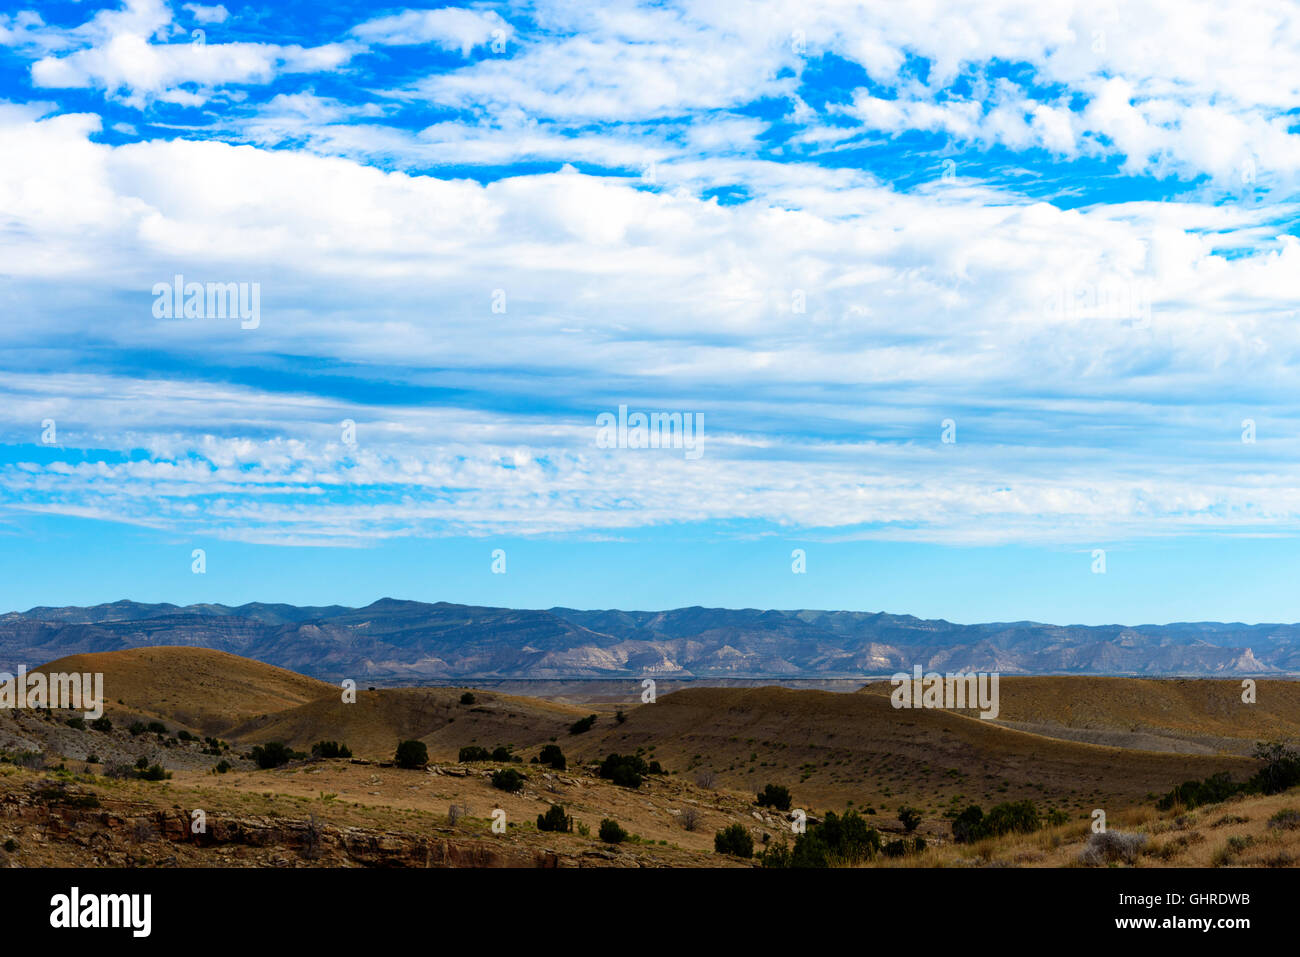 Marrone colline sotto il cielo blu con nuvole bianche, montagne in distanza. Foto Stock